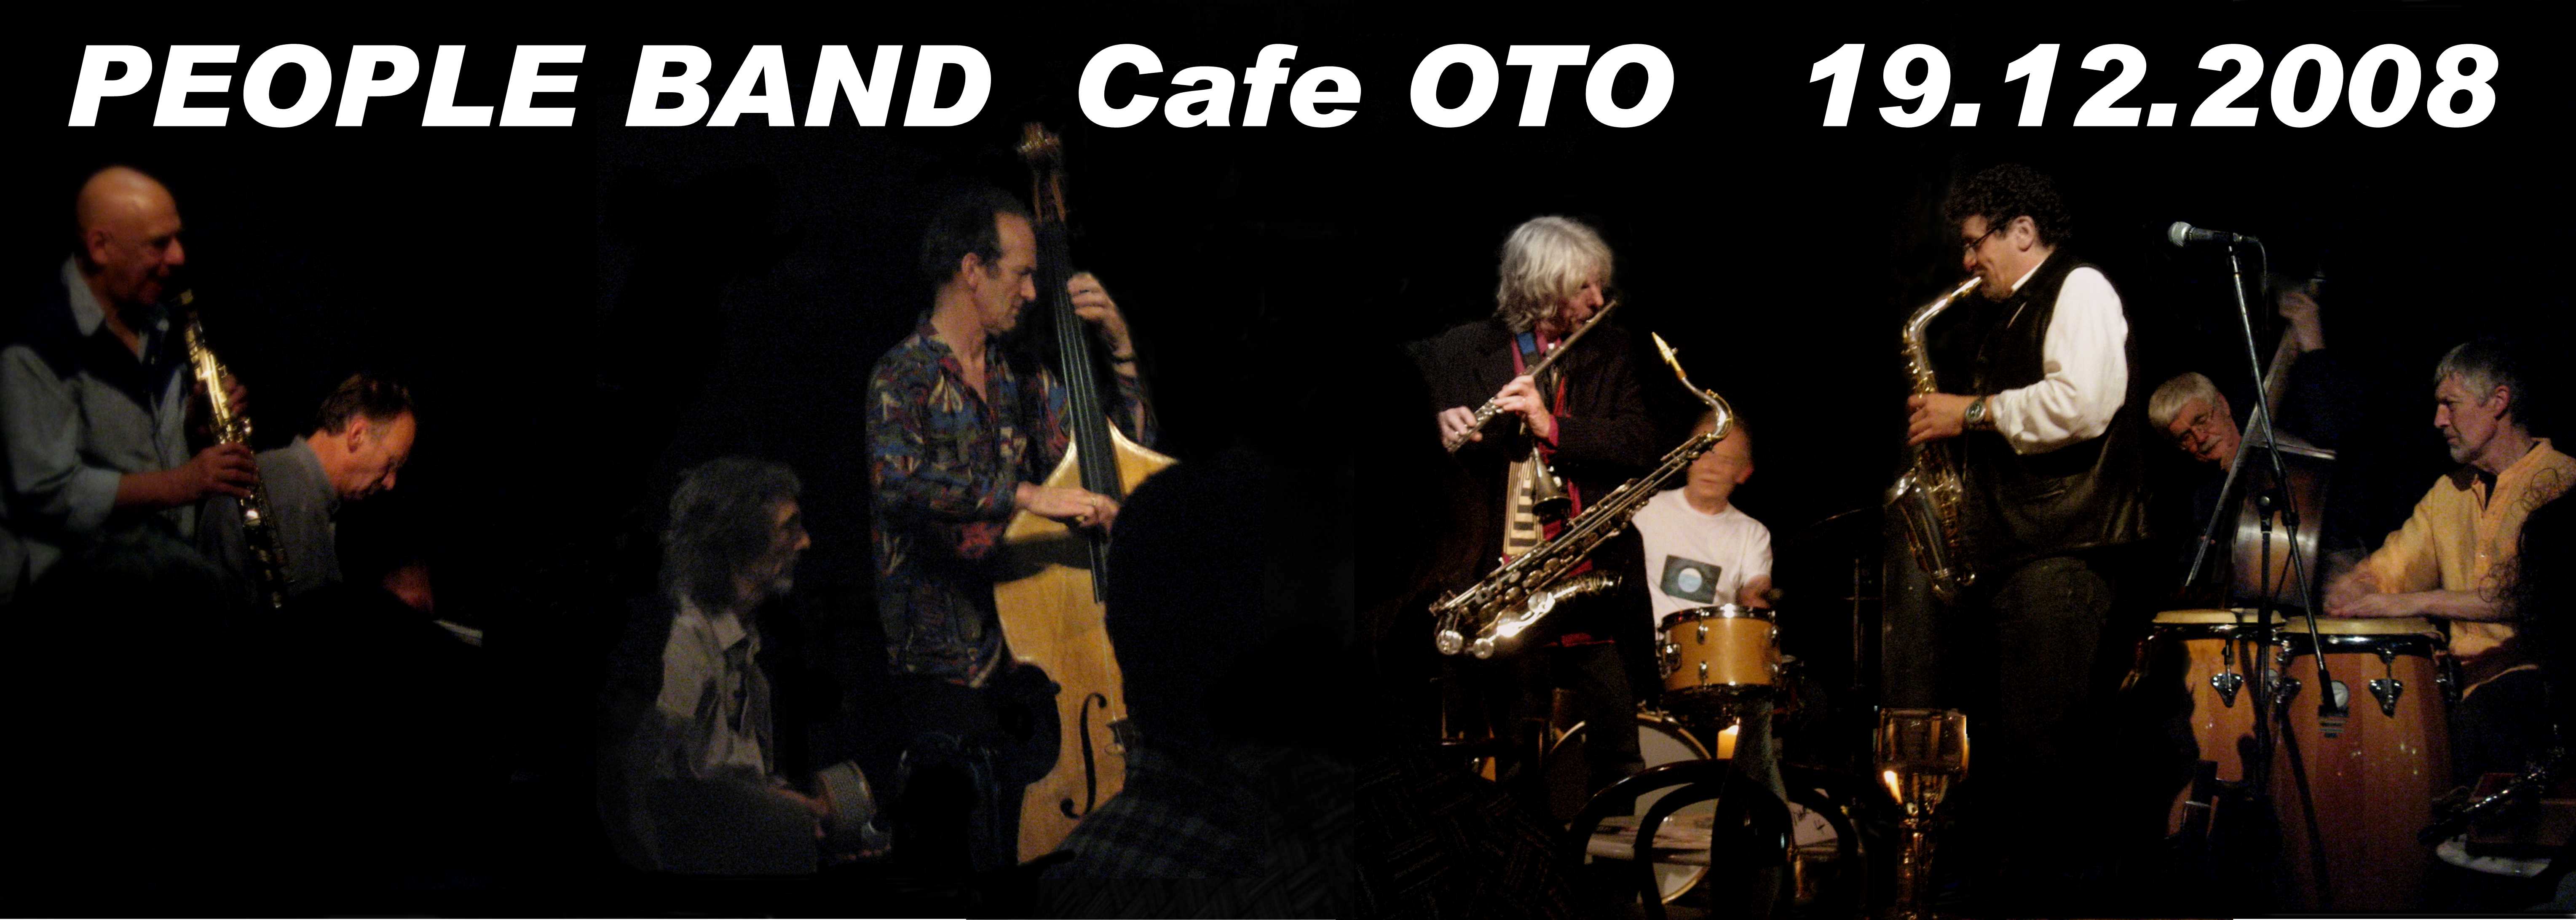 People Band Cafe Oto